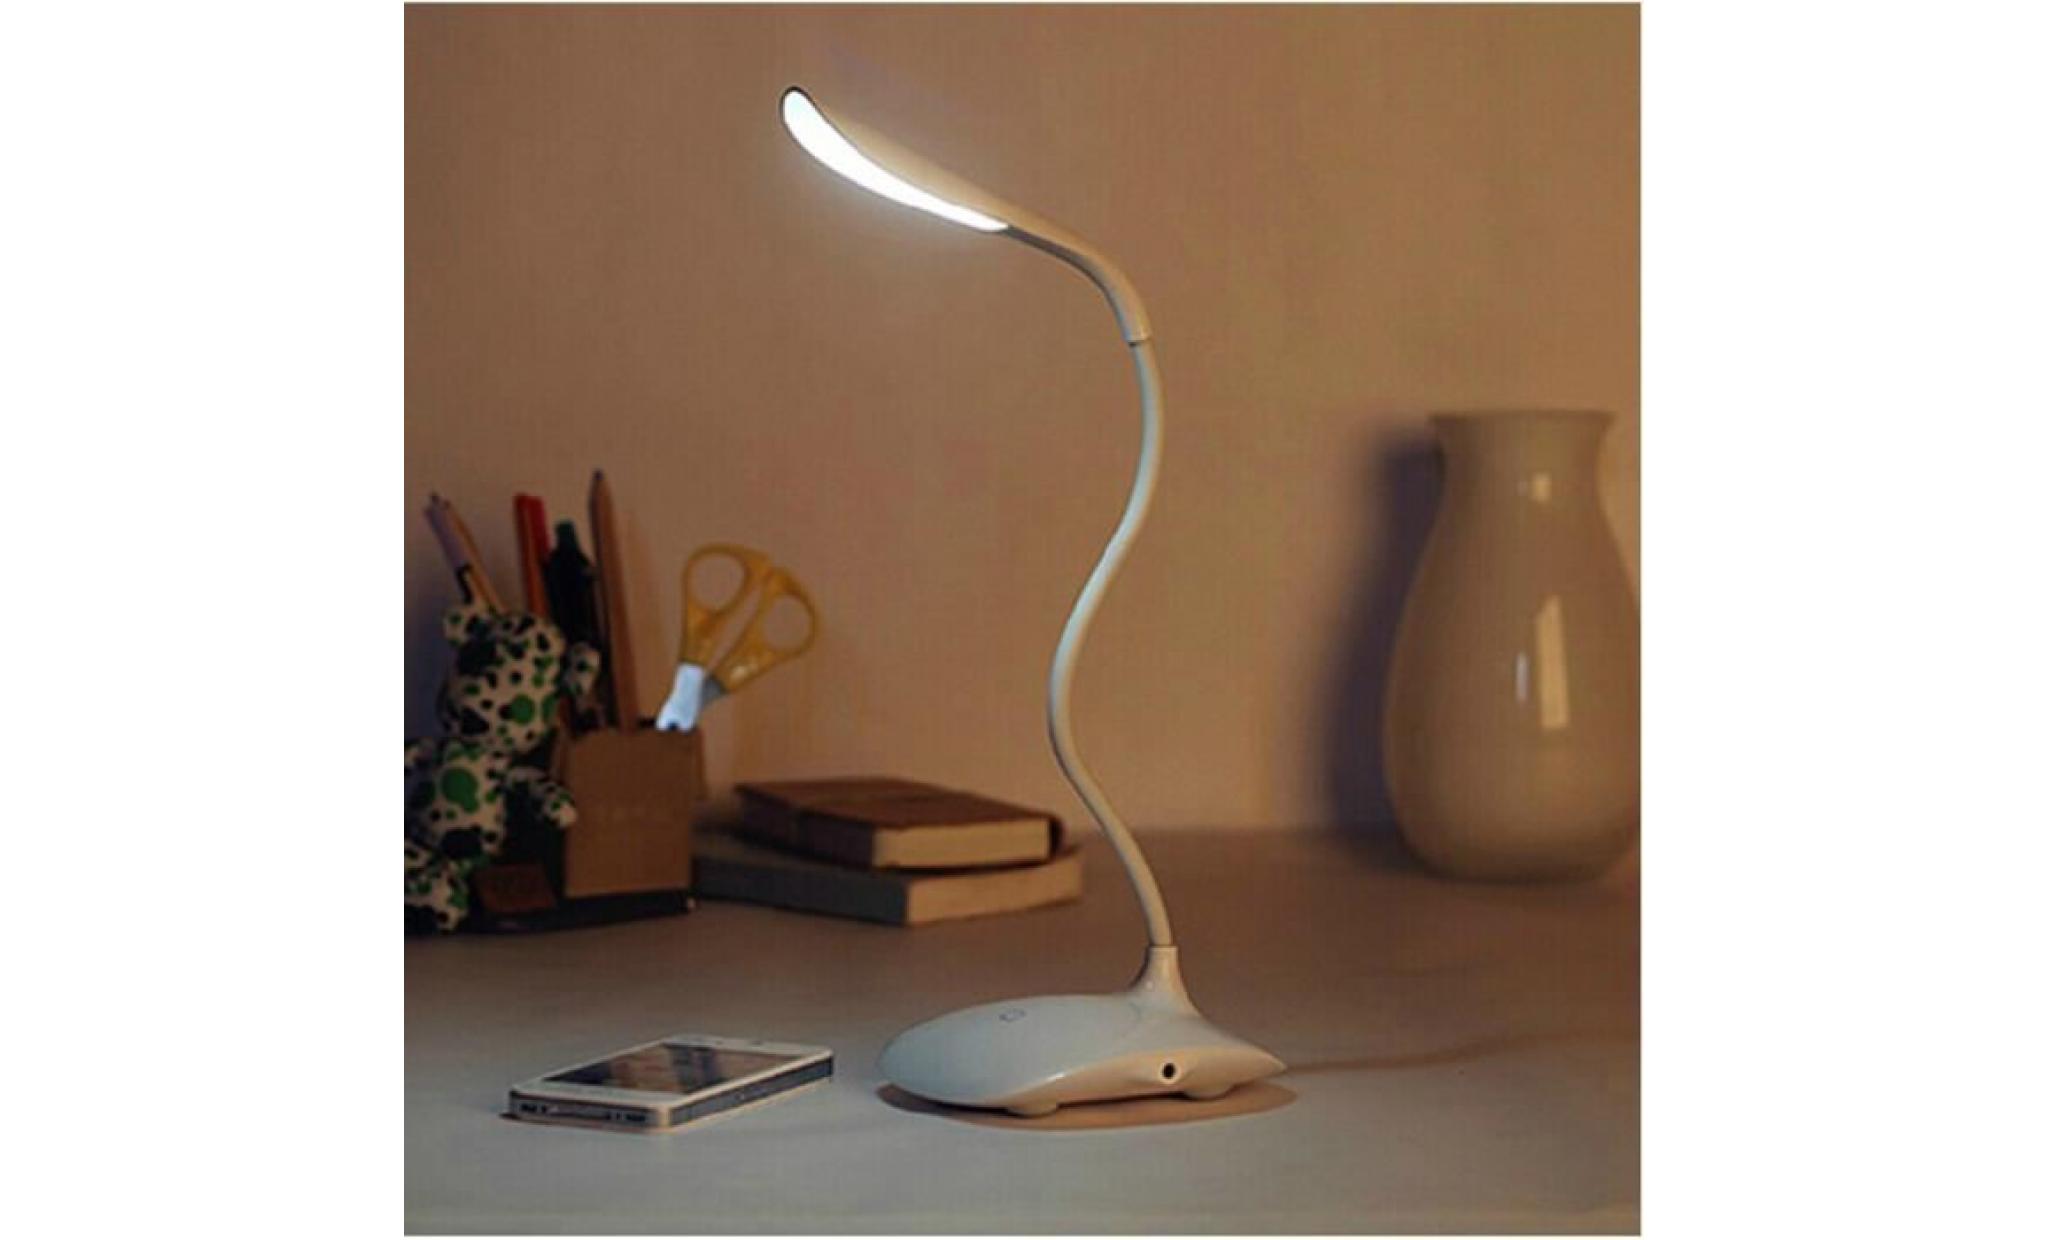 dimmable led lampe de bureau,lampe de table (600lumen, touch control,3 dimmer level,bras flexible,noir) [classe énergétique a+++] pas cher